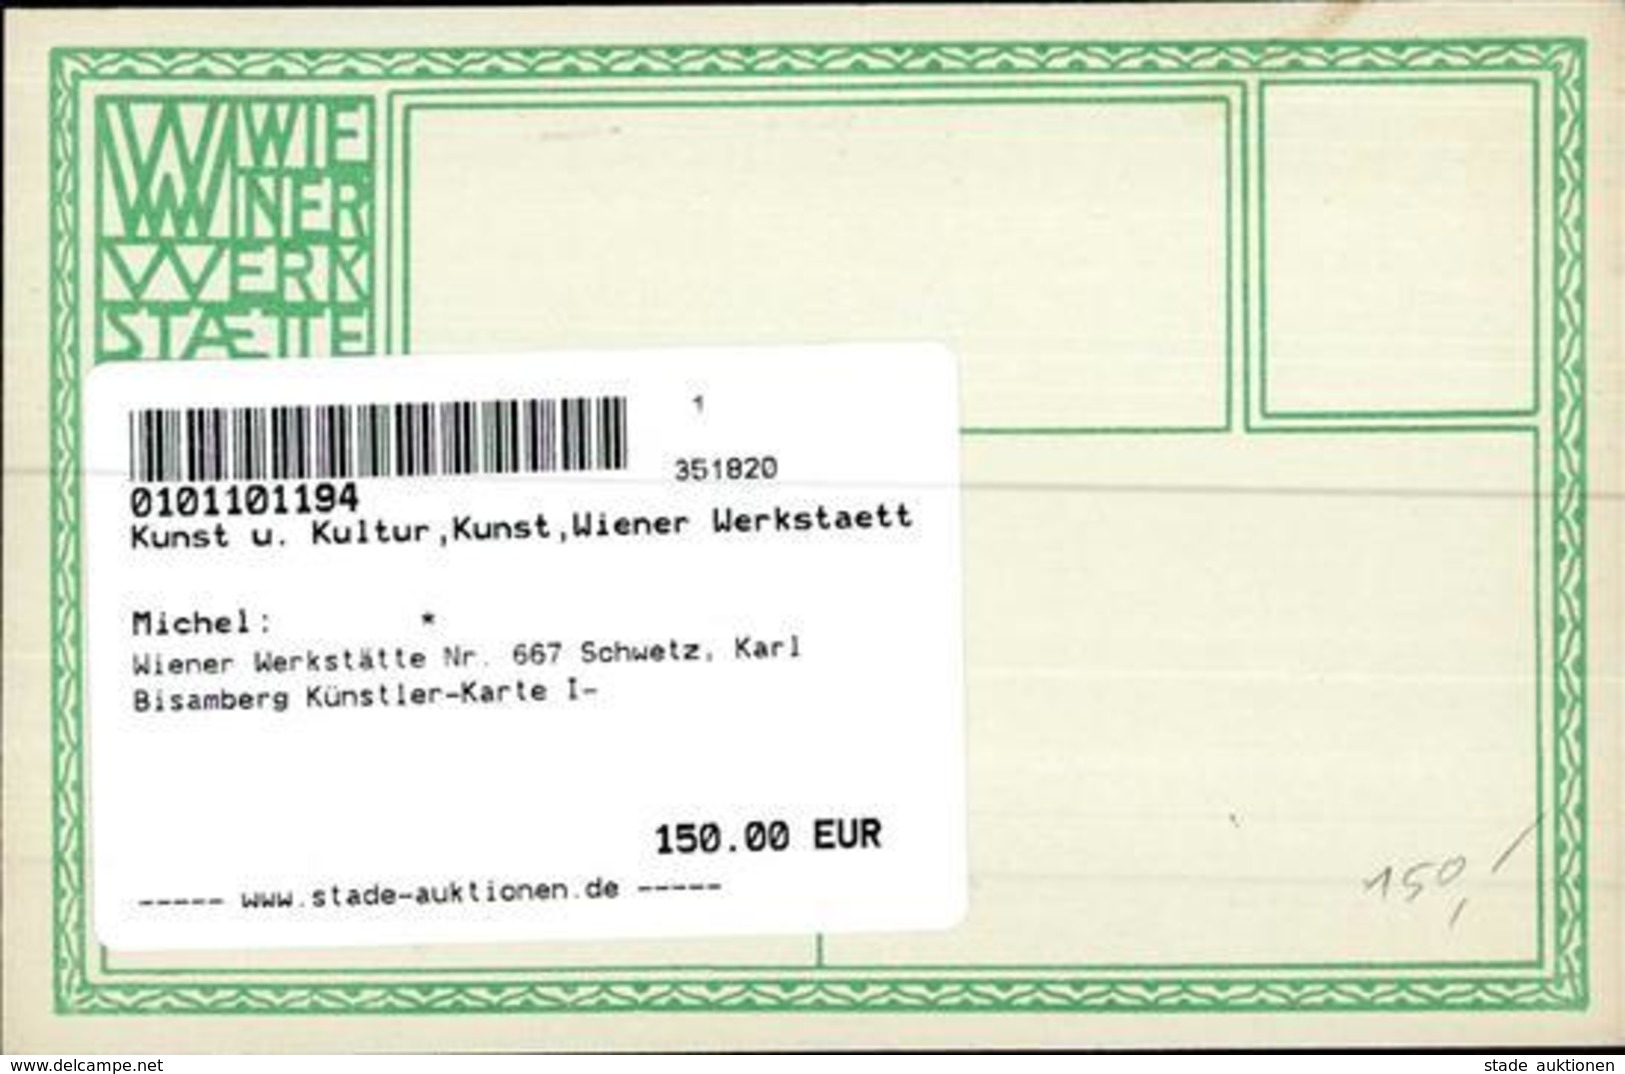 Wiener Werkstätte Nr. 667 Schwetz, Karl Bisamberg Künstler-Karte I- - Kokoschka